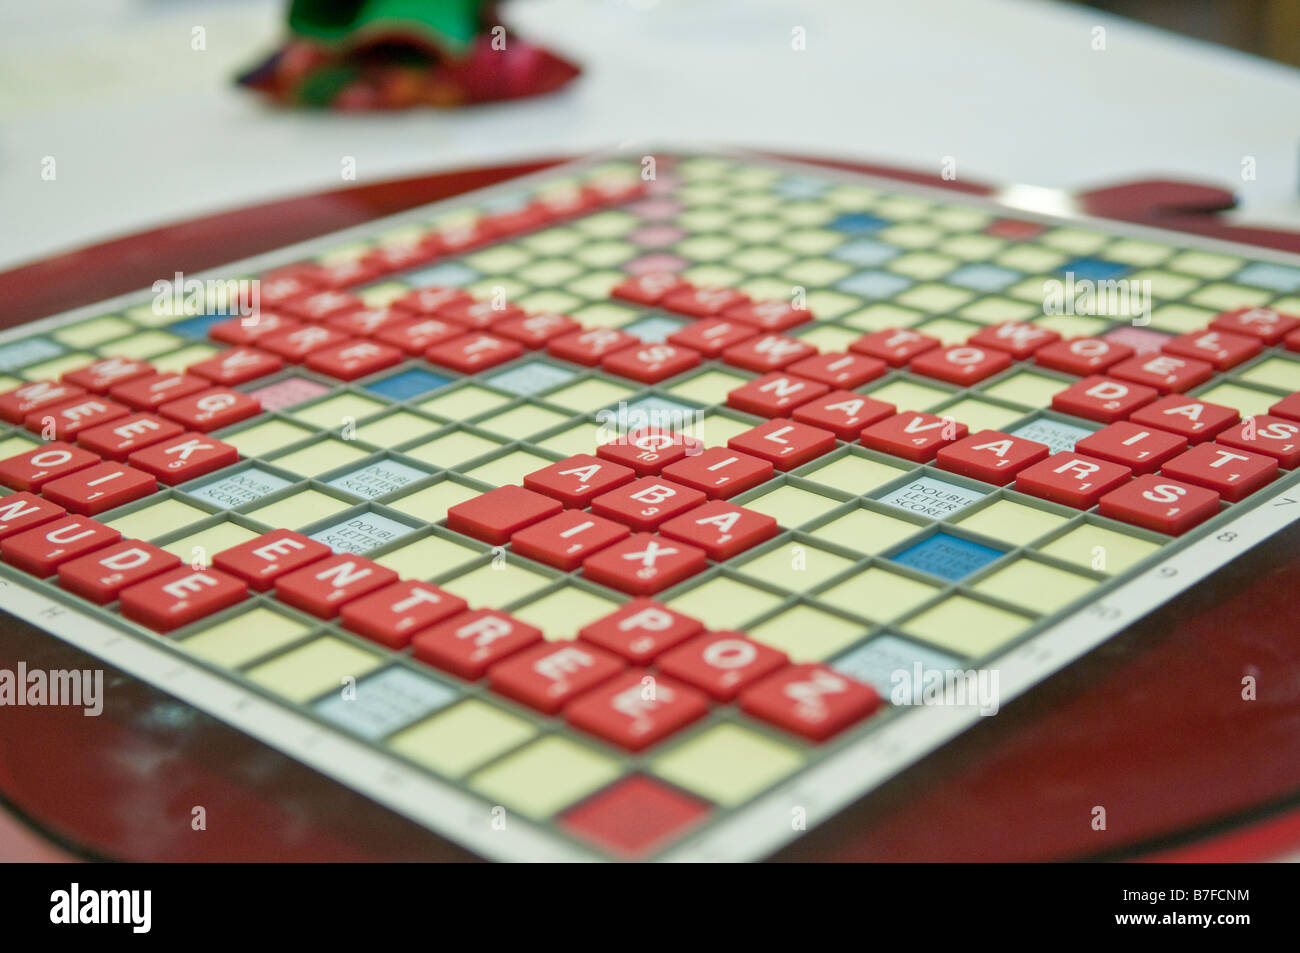 Scrabble board à la fin du jeu à l'Irlande du Nord championnat de Scrabble Banque D'Images